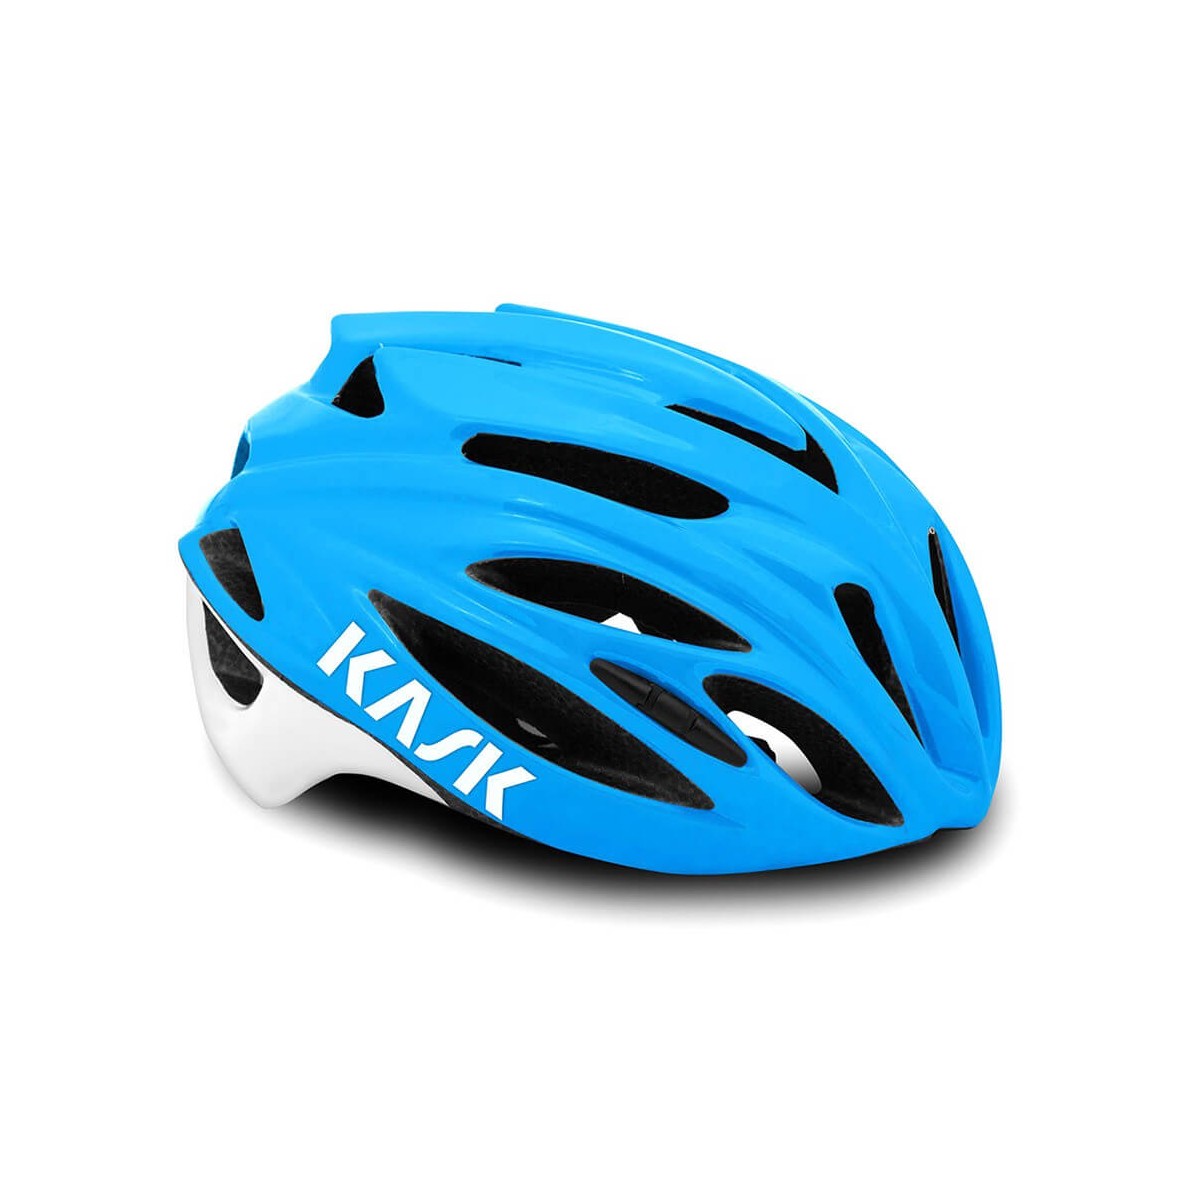 Kask Rapido Blue Helmet, Size M